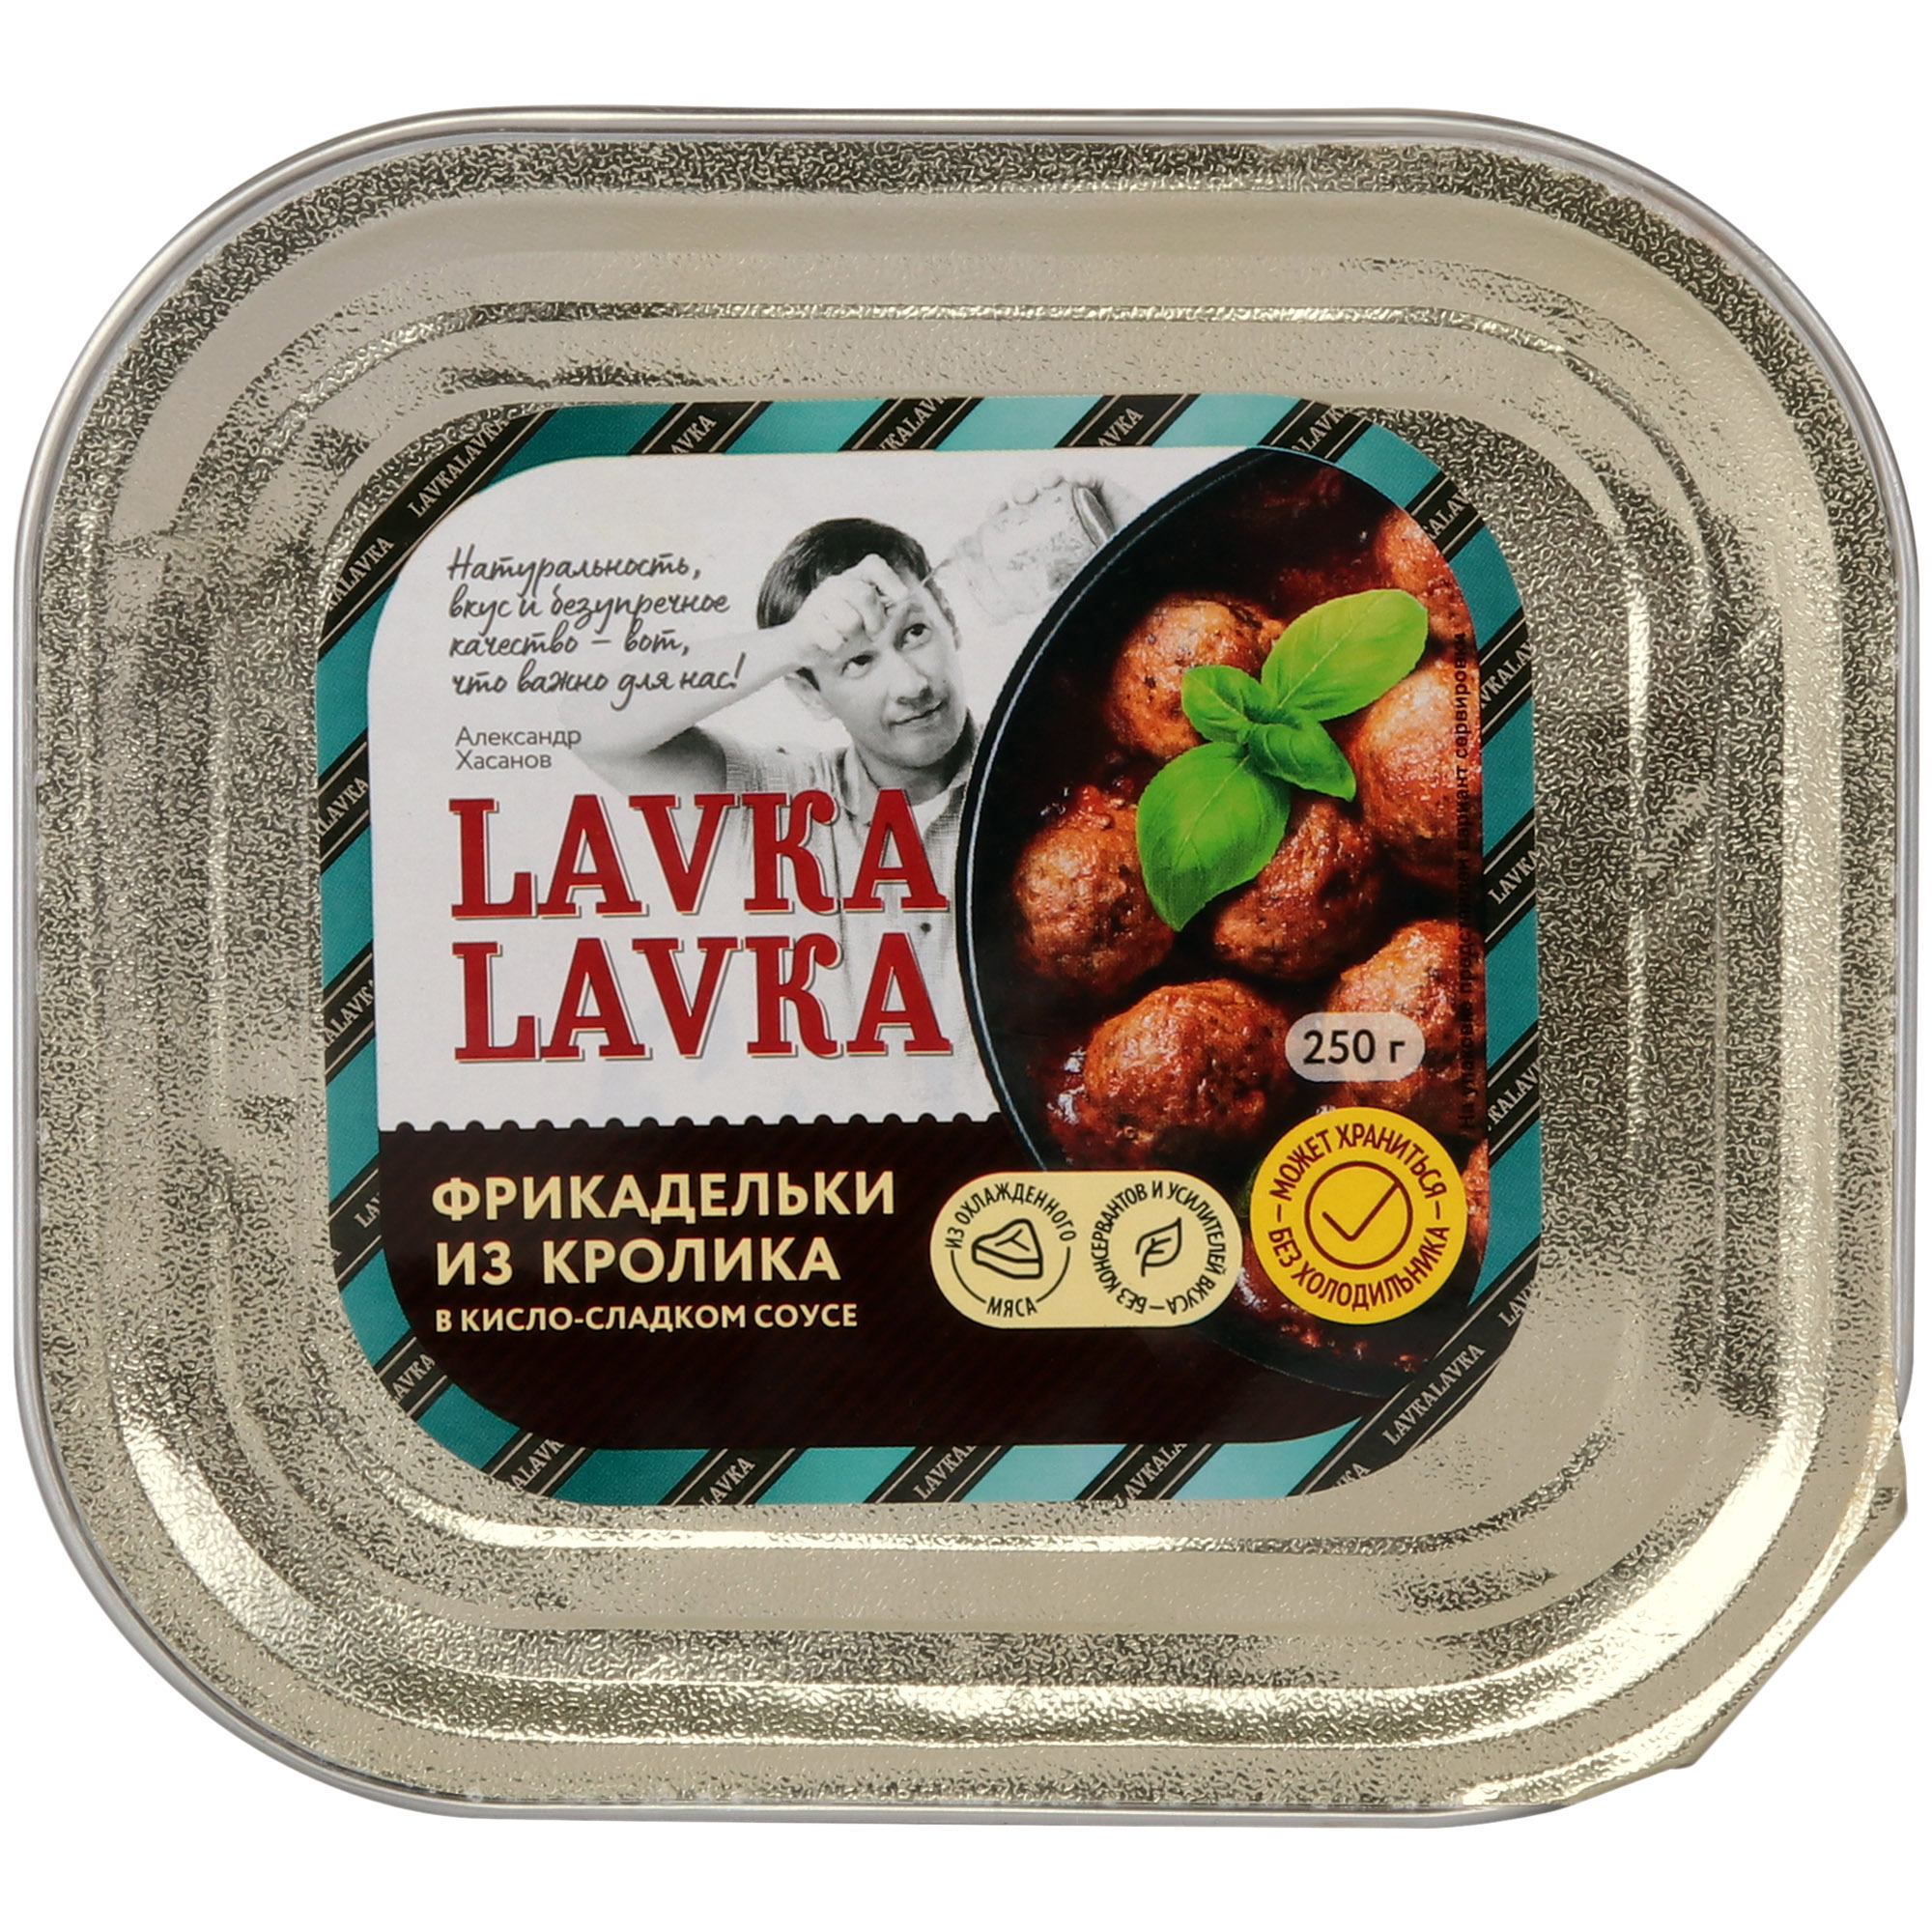 Фрикадельки LavkaLavka из кролика, 250 г котлеты из индейки lavkalavka в сливочном соусе 250 г